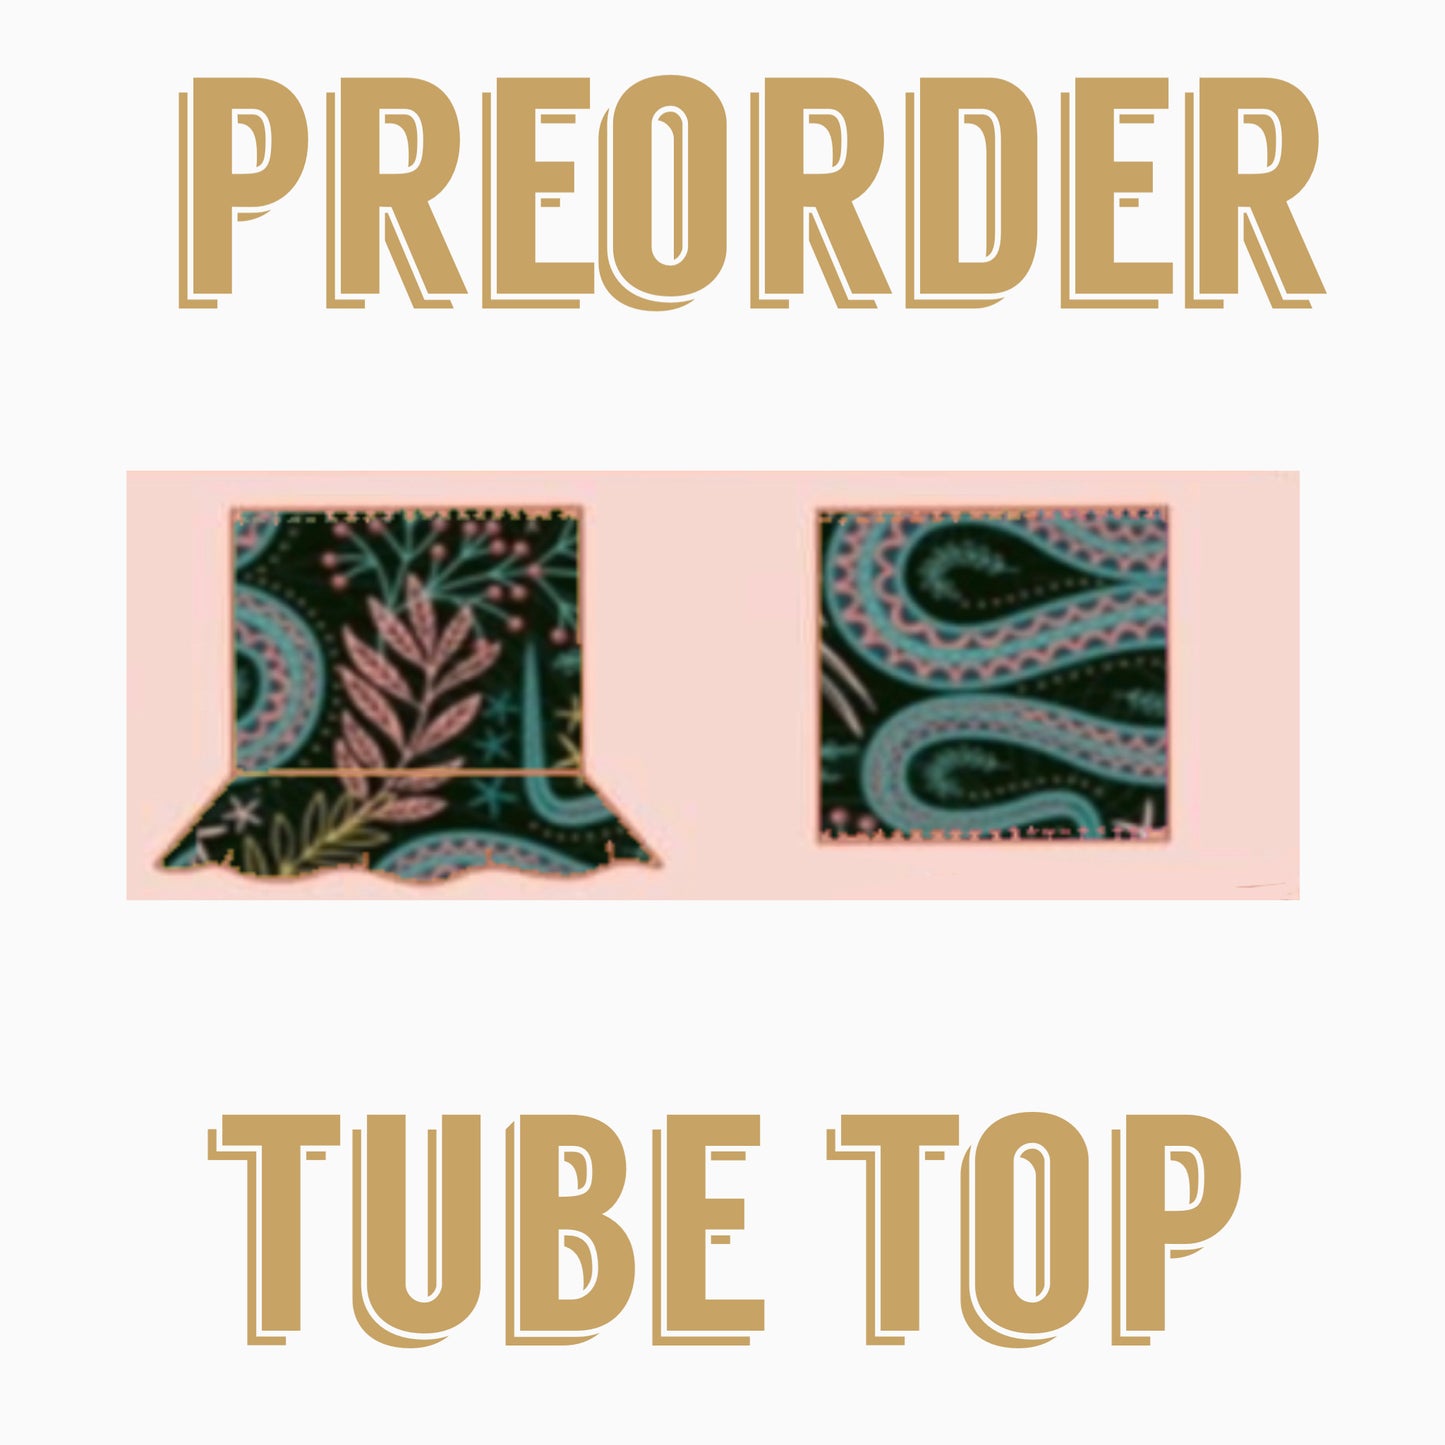 PATRIOTIC PREORDER  Preorder | Tube top